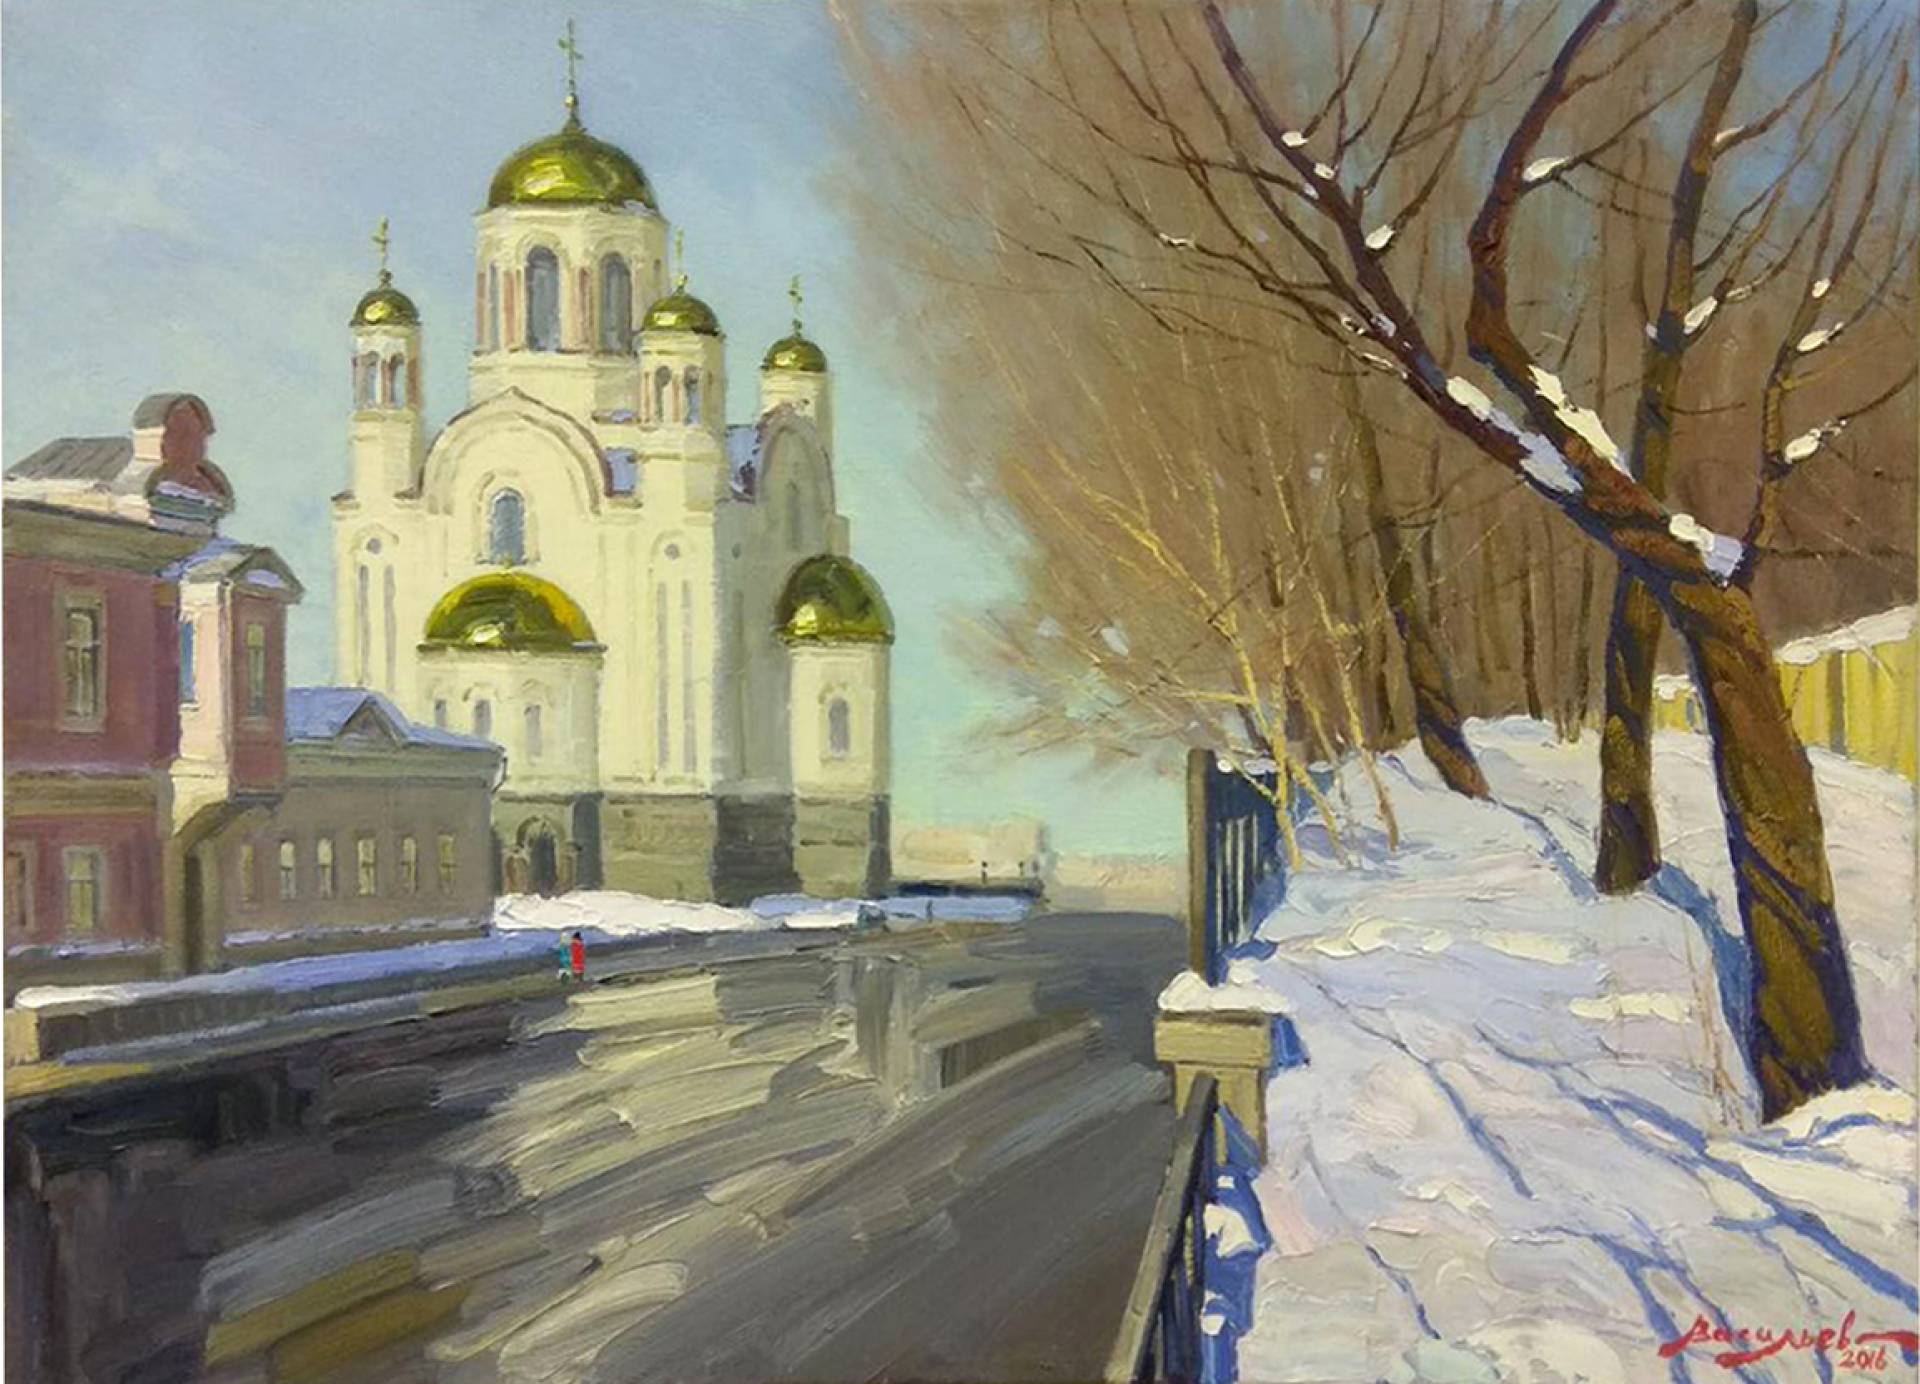 Spring in Yekaterinburg - 1, Dmitry Vasiliev, Buy the painting Oil